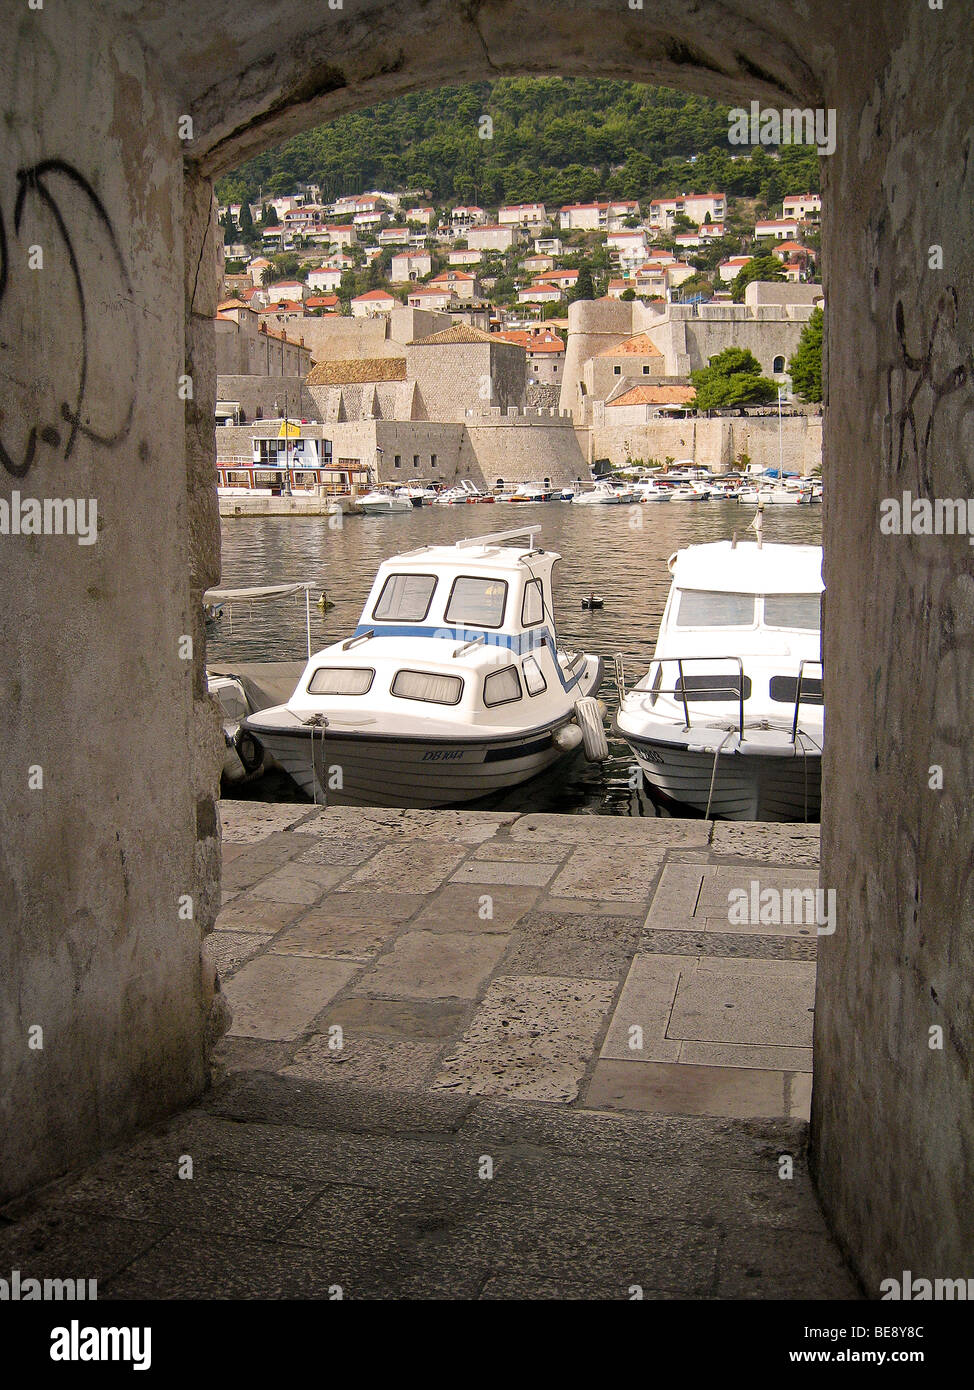 Croatia Hrvartska Kroatien Dubrovnik Fishboat small tourist boat harbor harbour old City arch door way wall Stock Photo